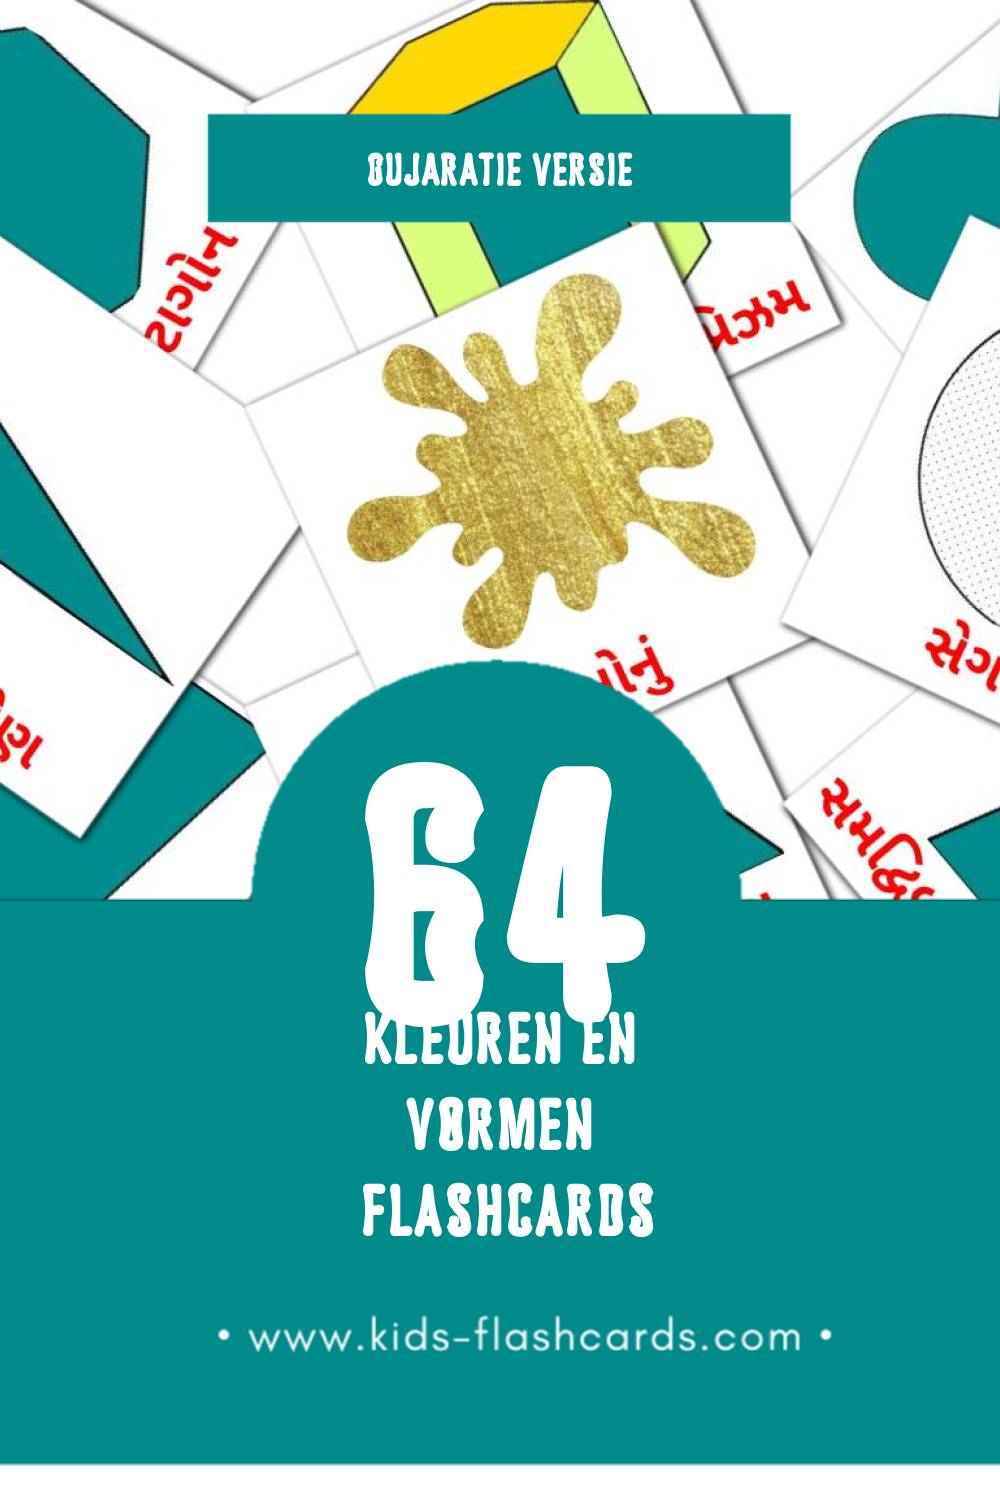 Visuele રંગો અને આકાર Flashcards voor Kleuters (64 kaarten in het Gujarati)